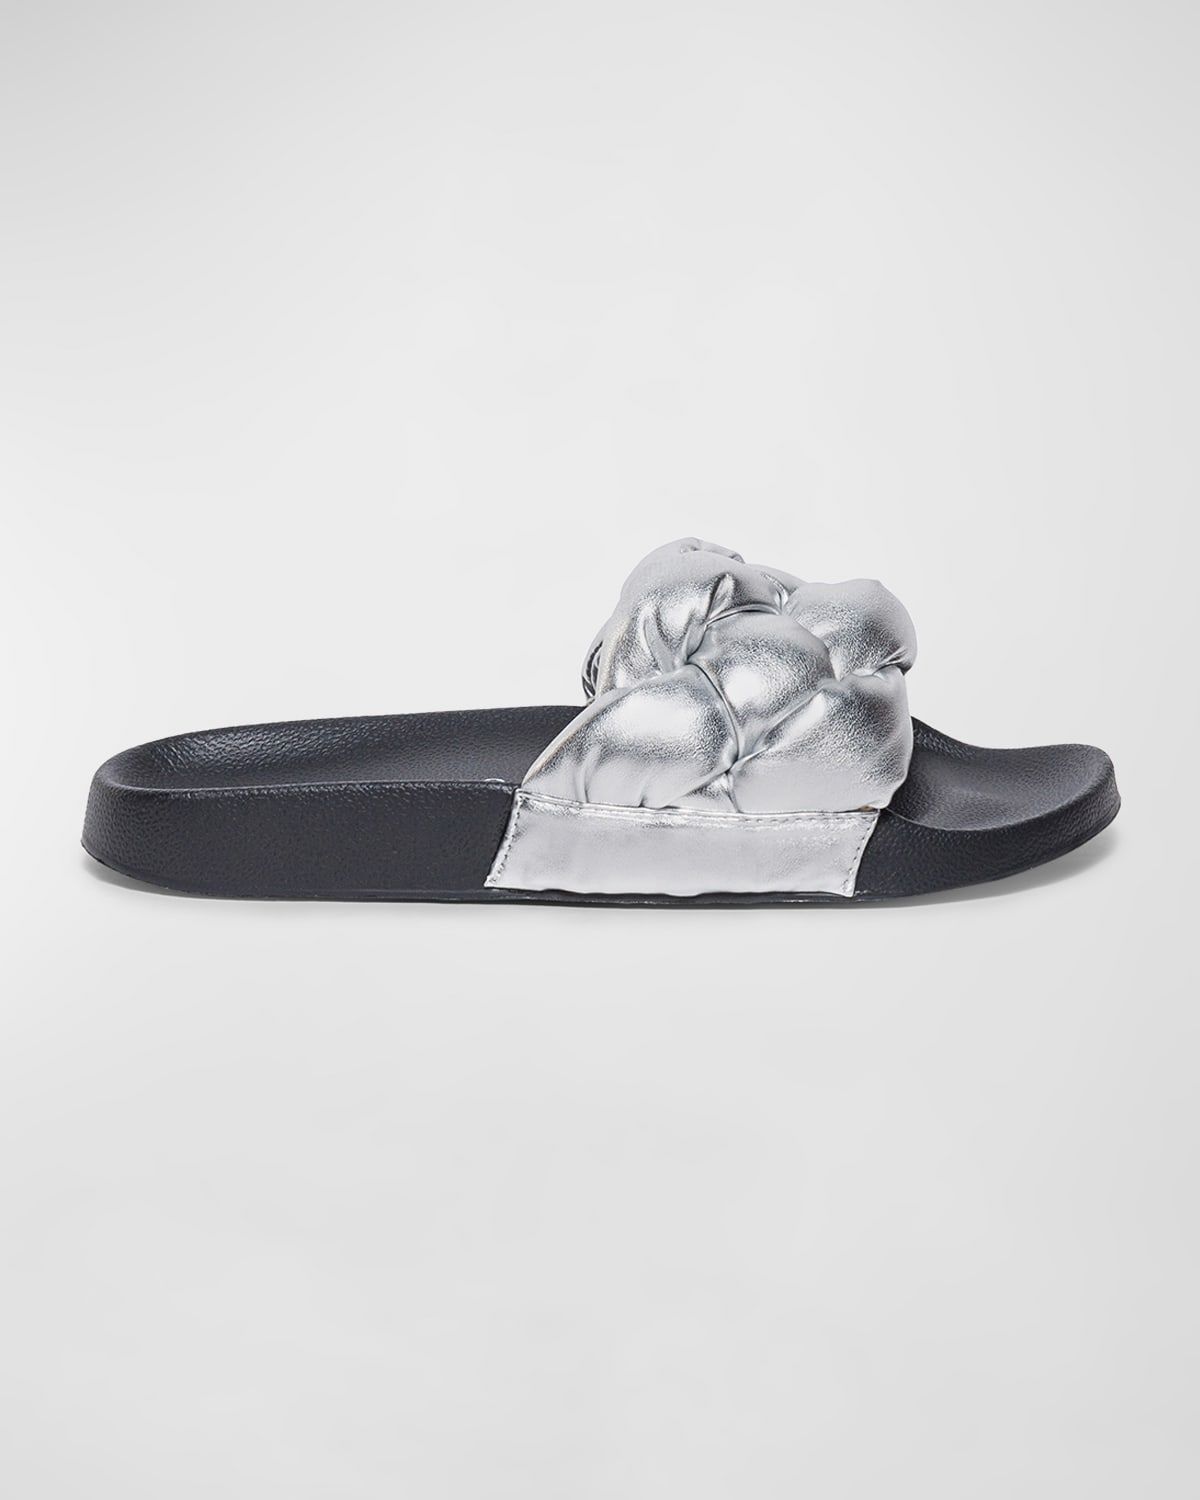 Bernardo Rylee Slide Sandals In Silver